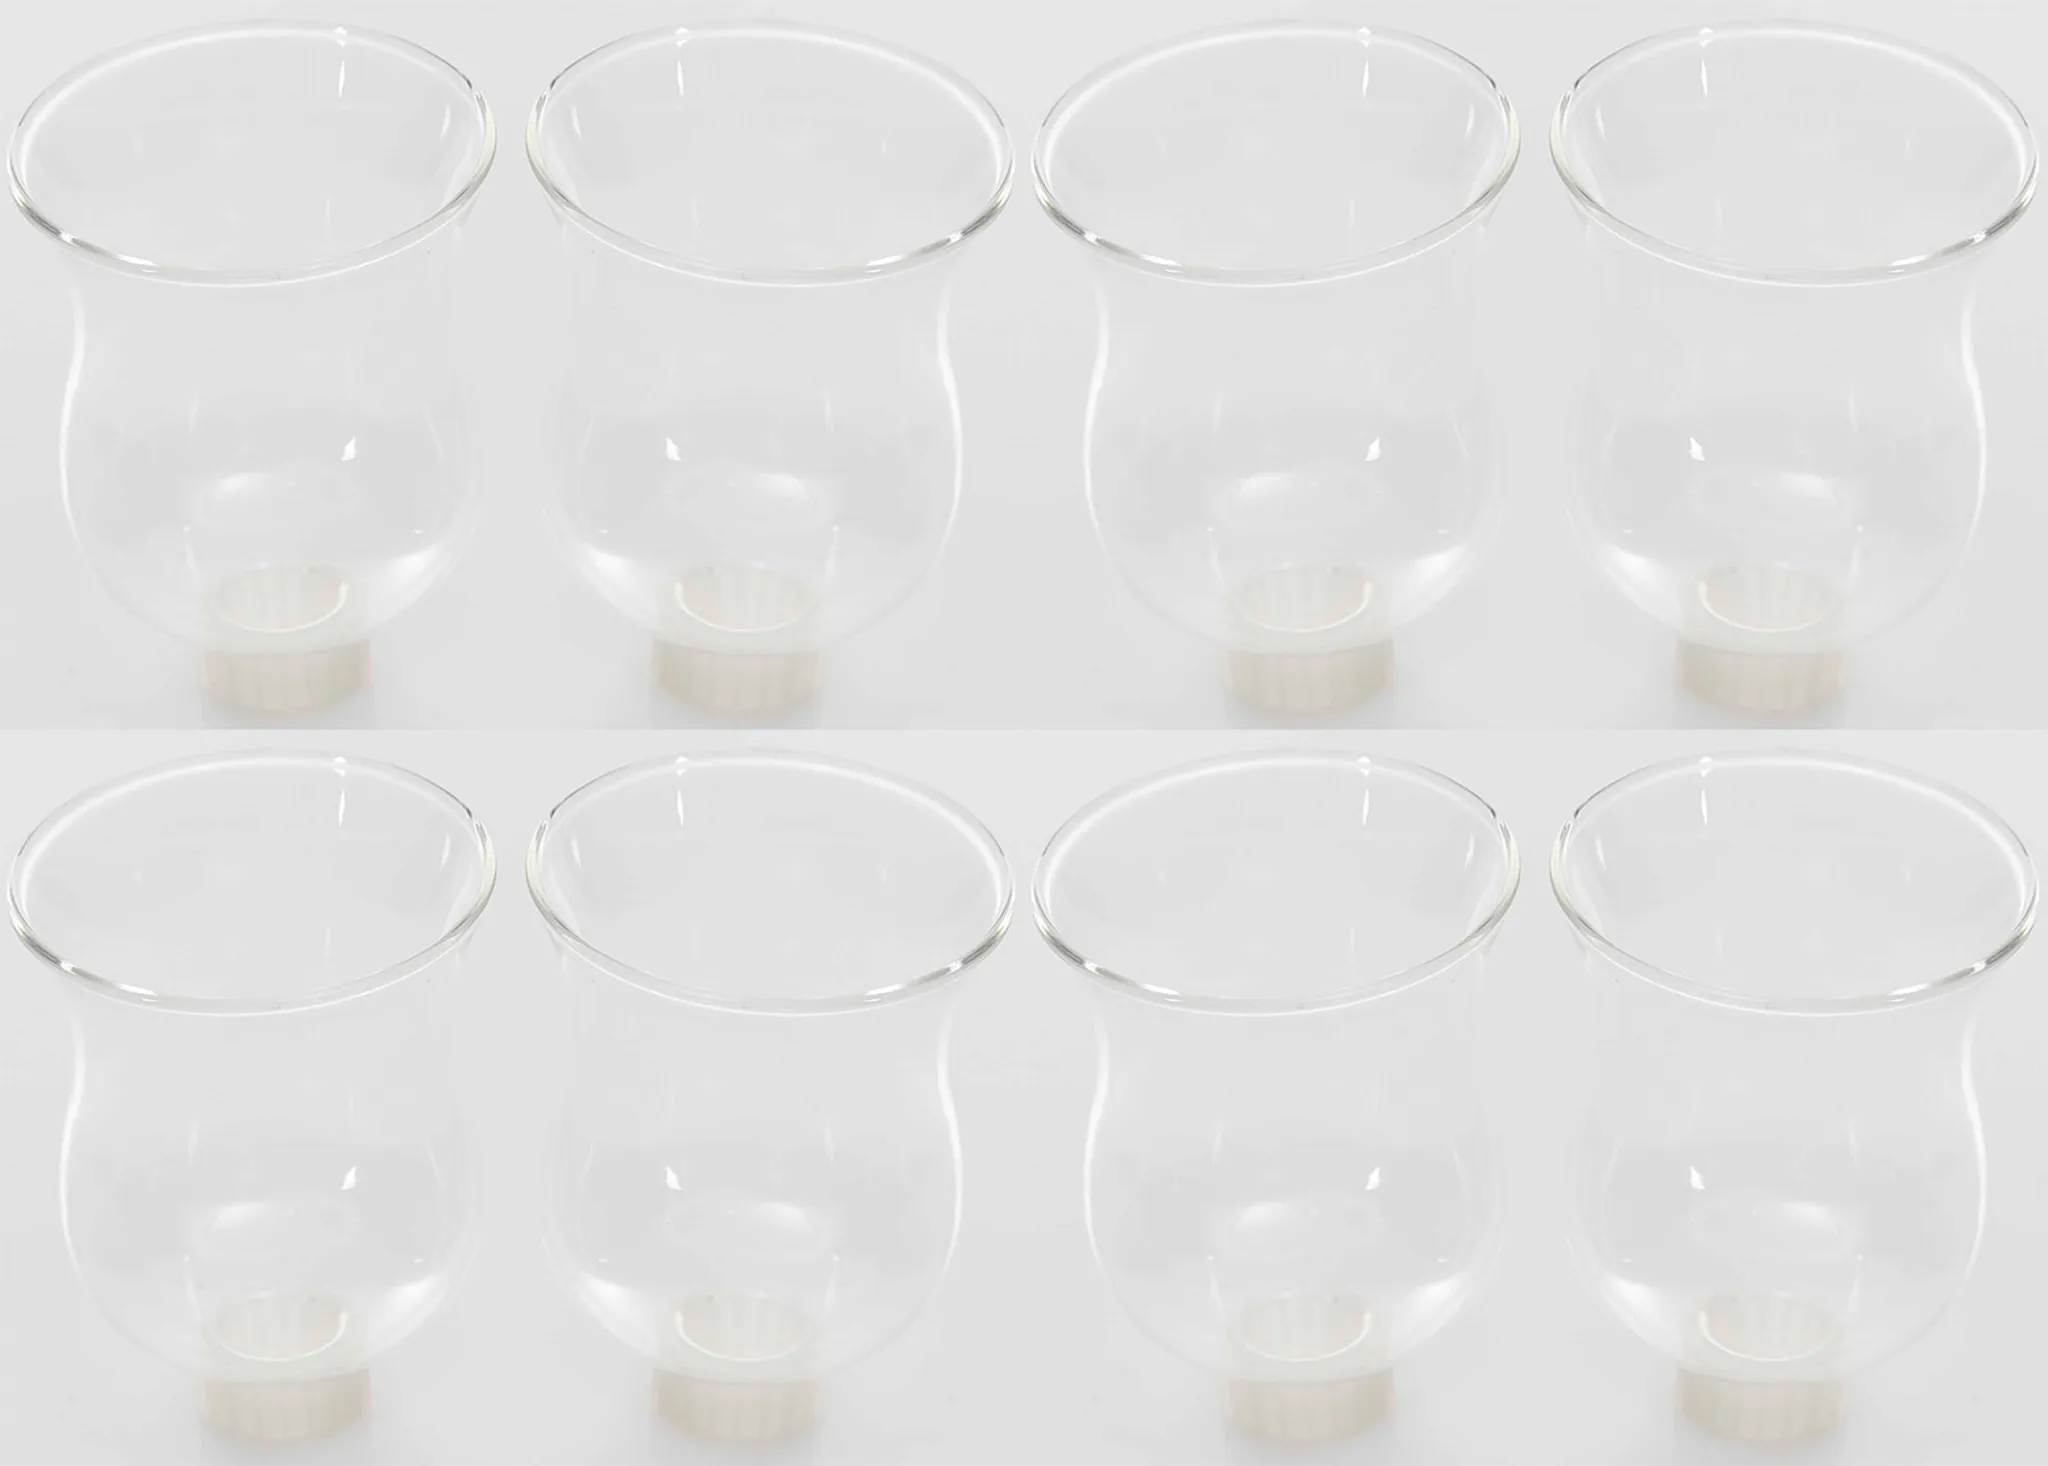 8x Teelichtaufsatz klar 8 cm für Adventskranz Kerzenpick Kerzenständer Glasaufsatz 6cm Stabkerzenhalter Kerzenleuchter Teelichthalter Glas